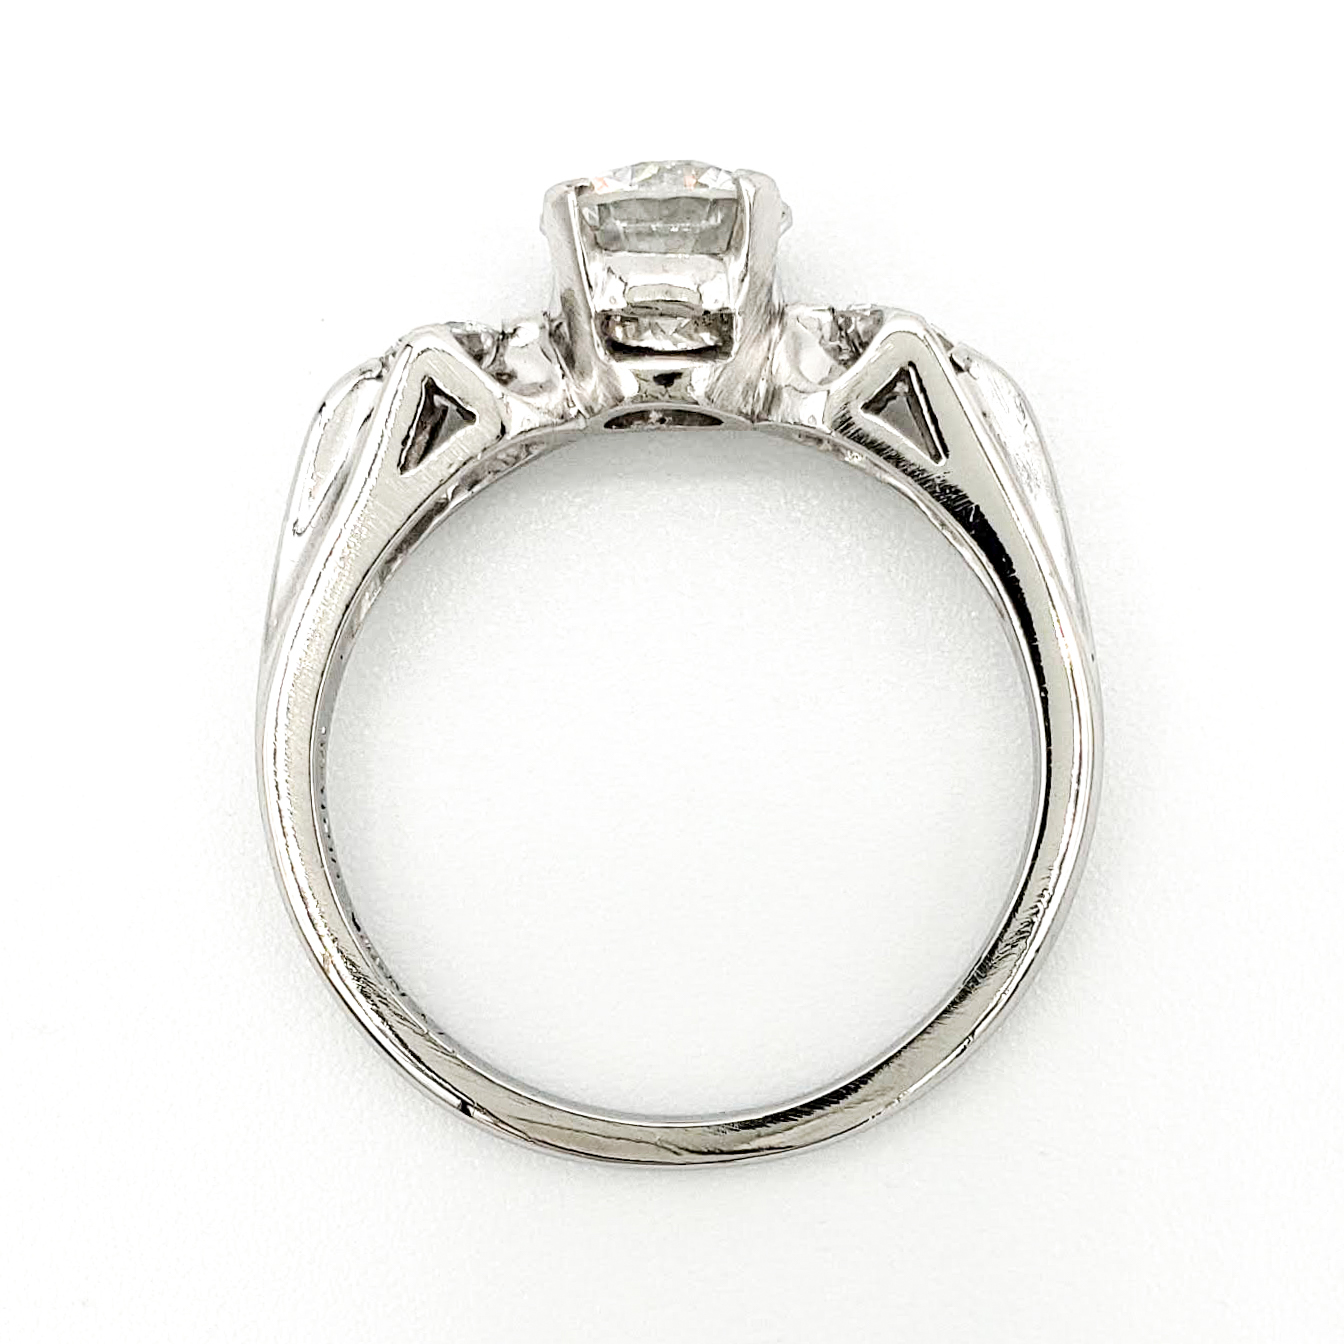 Vintage Platinum Engagement Ring With 0.70 Carat Round Brilliant Cut ...
